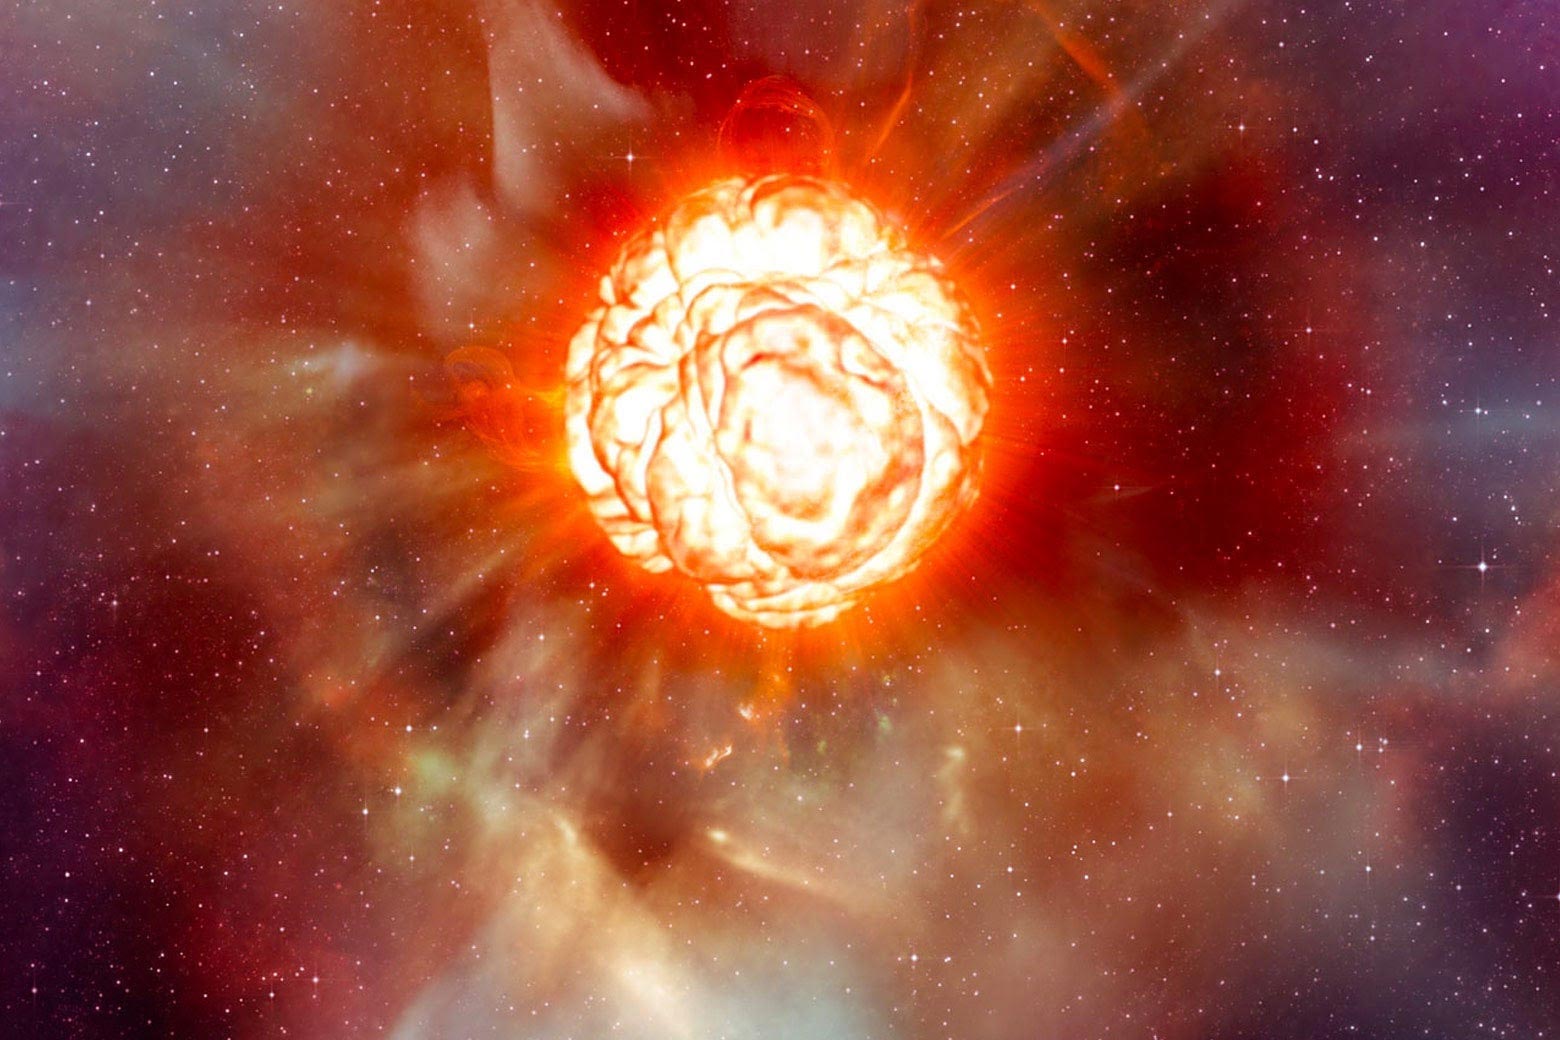 Betelgeuse Supernova Illustration